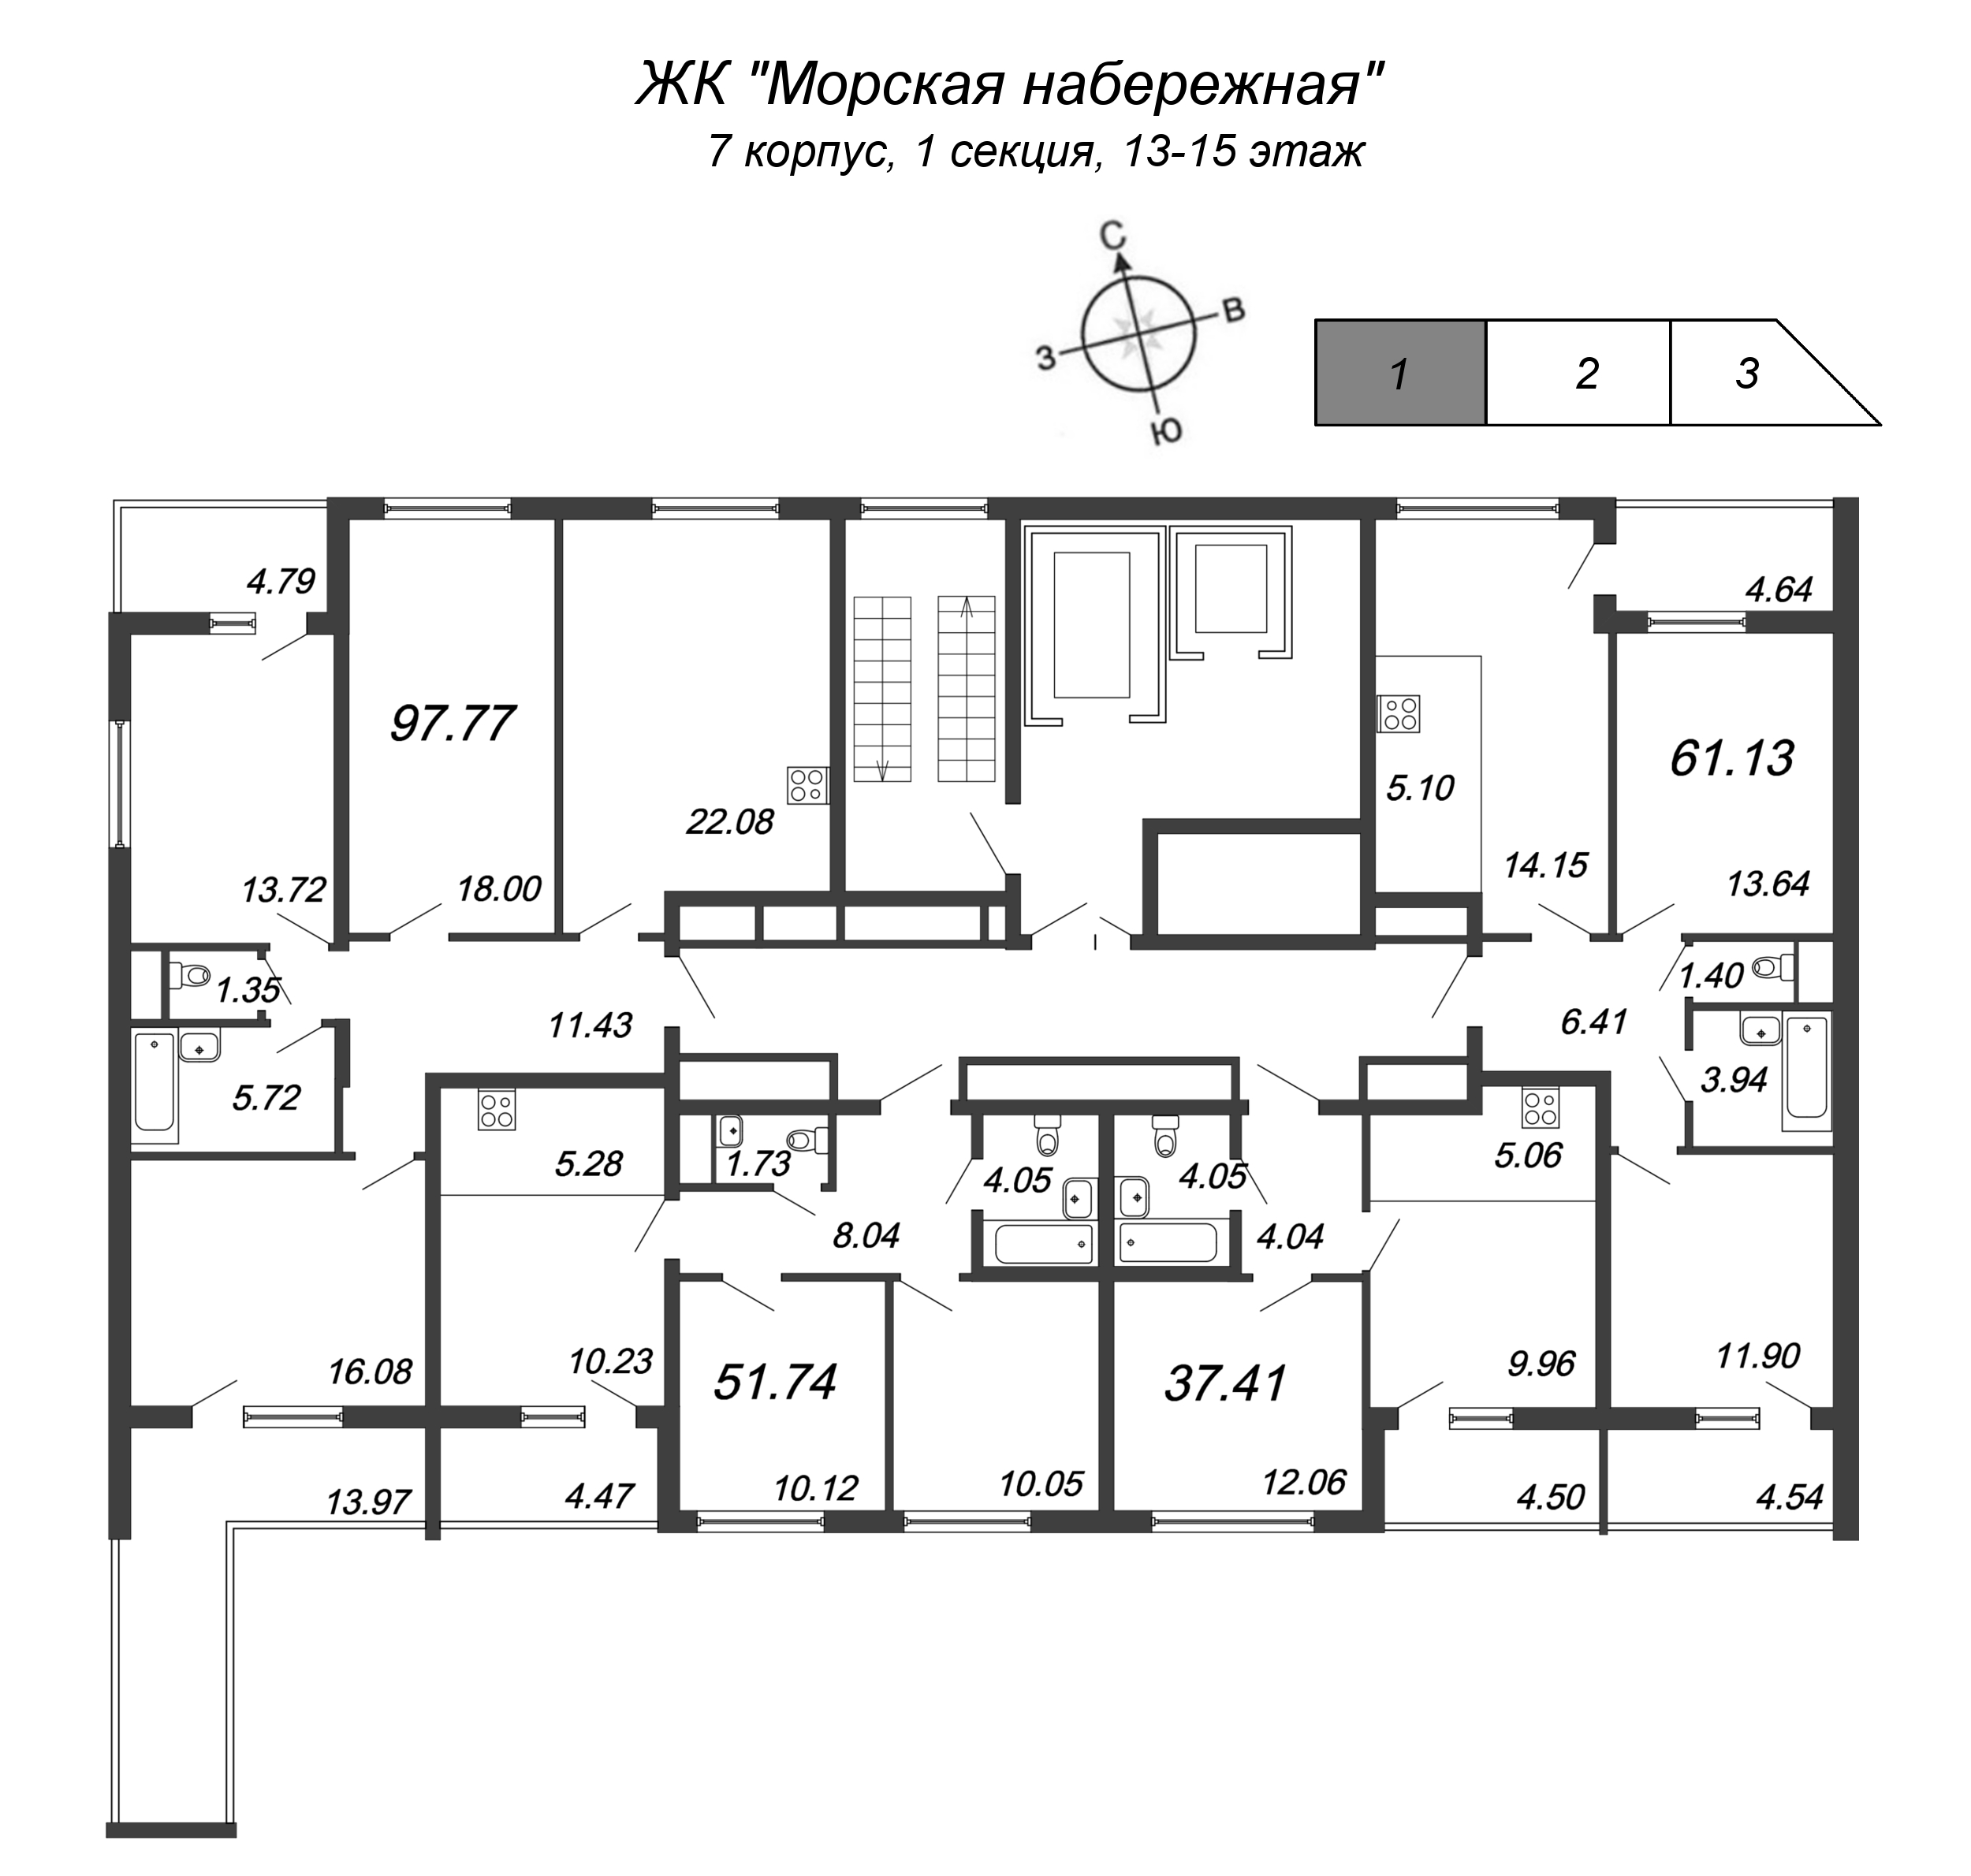 4-комнатная (Евро) квартира, 96.5 м² в ЖК "Морская набережная" - планировка этажа